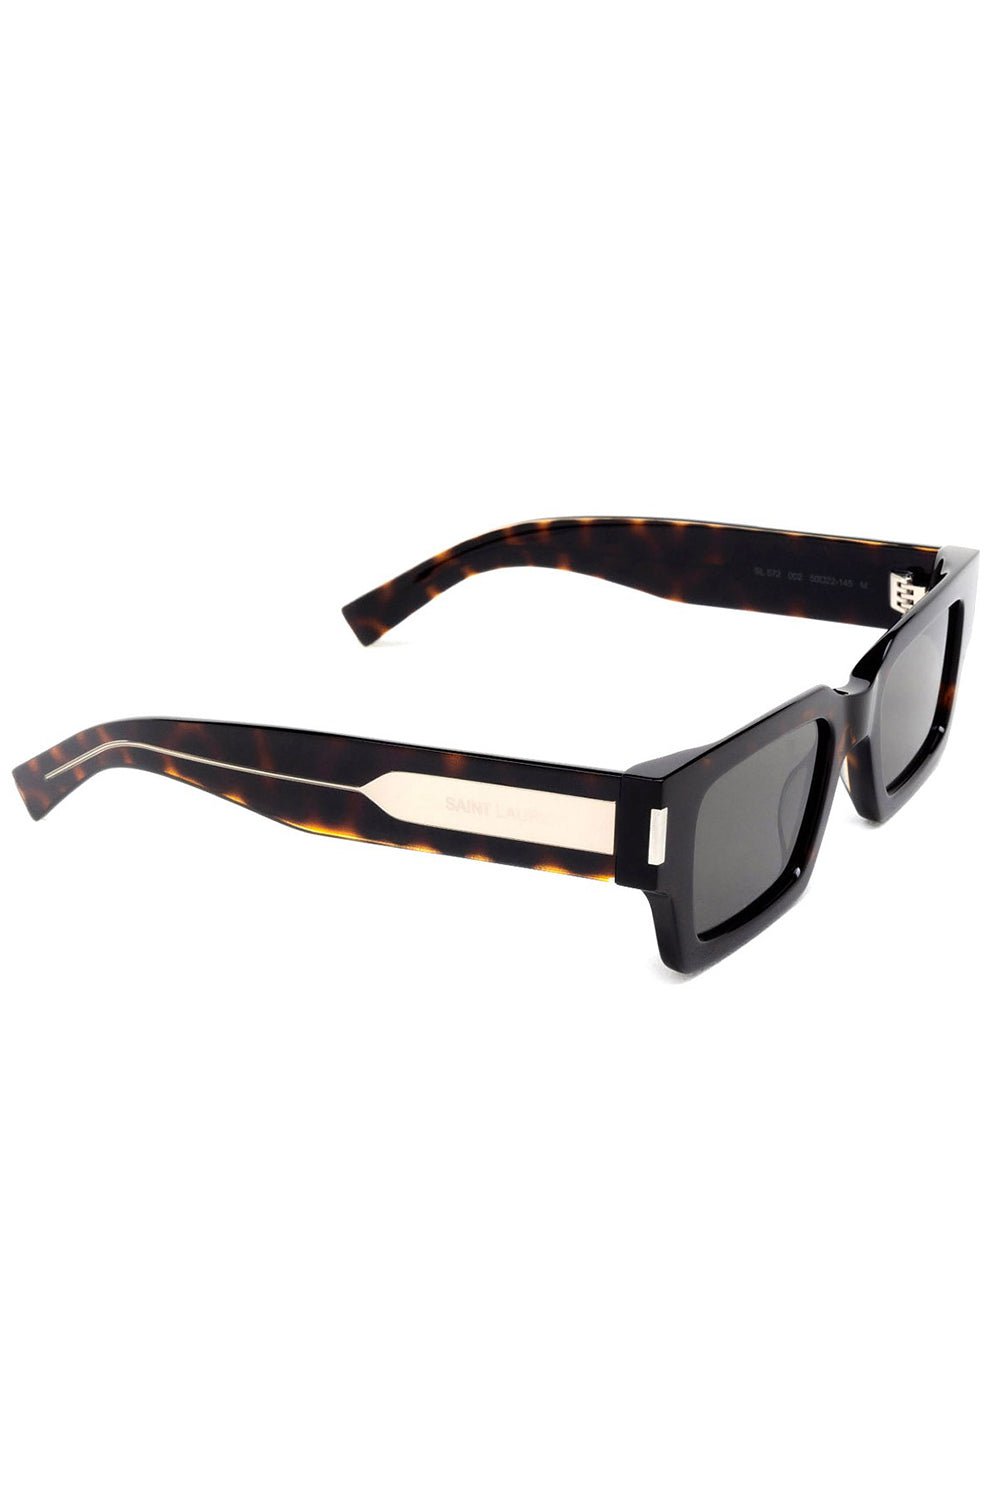 SAINT LAURENT-Classic Rectangle Sunglasses-HAV/GRY